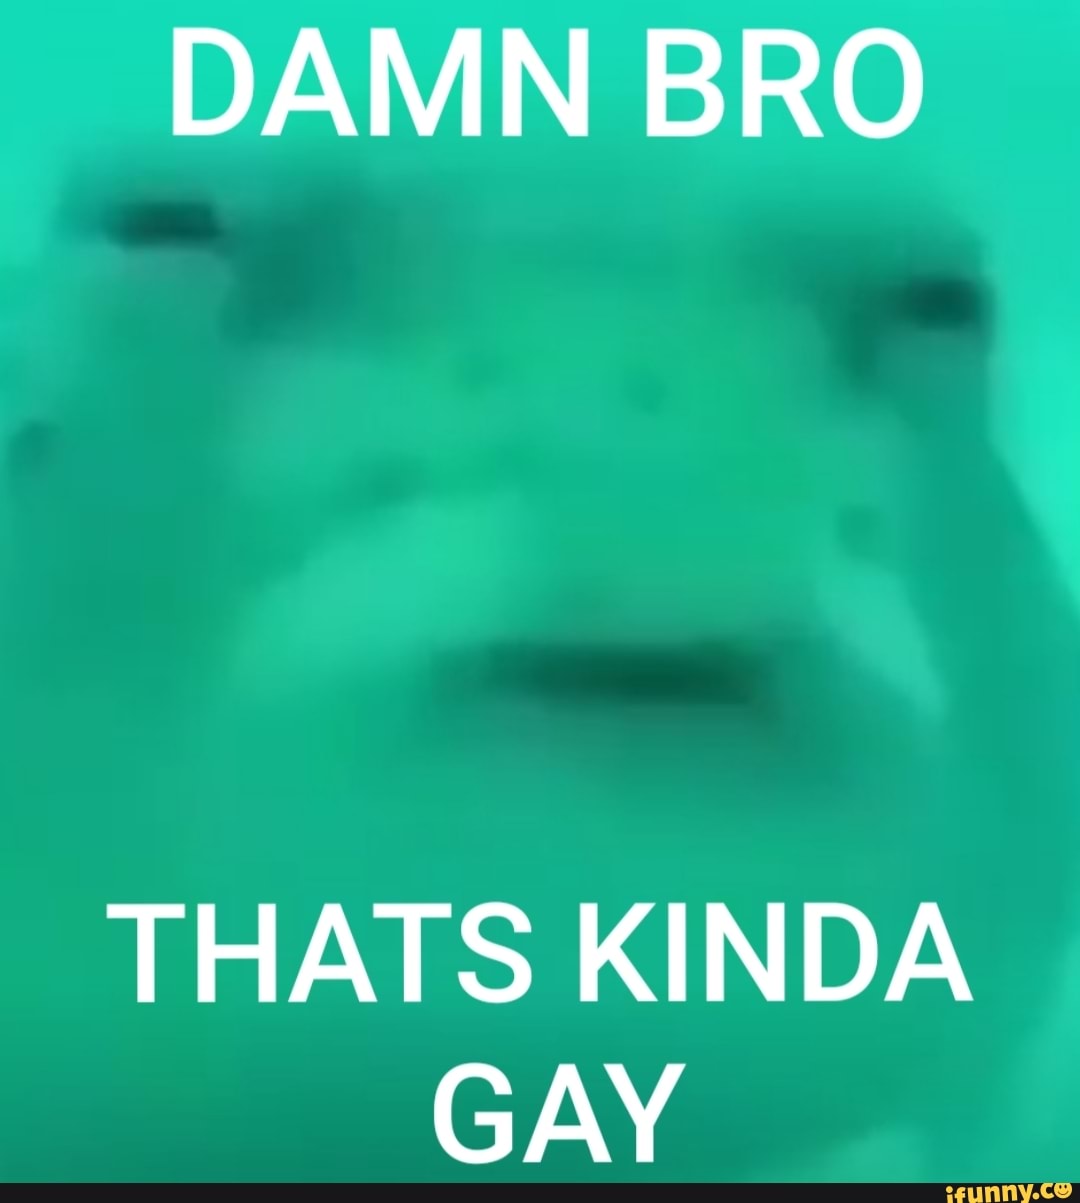 cuz thats gay meme